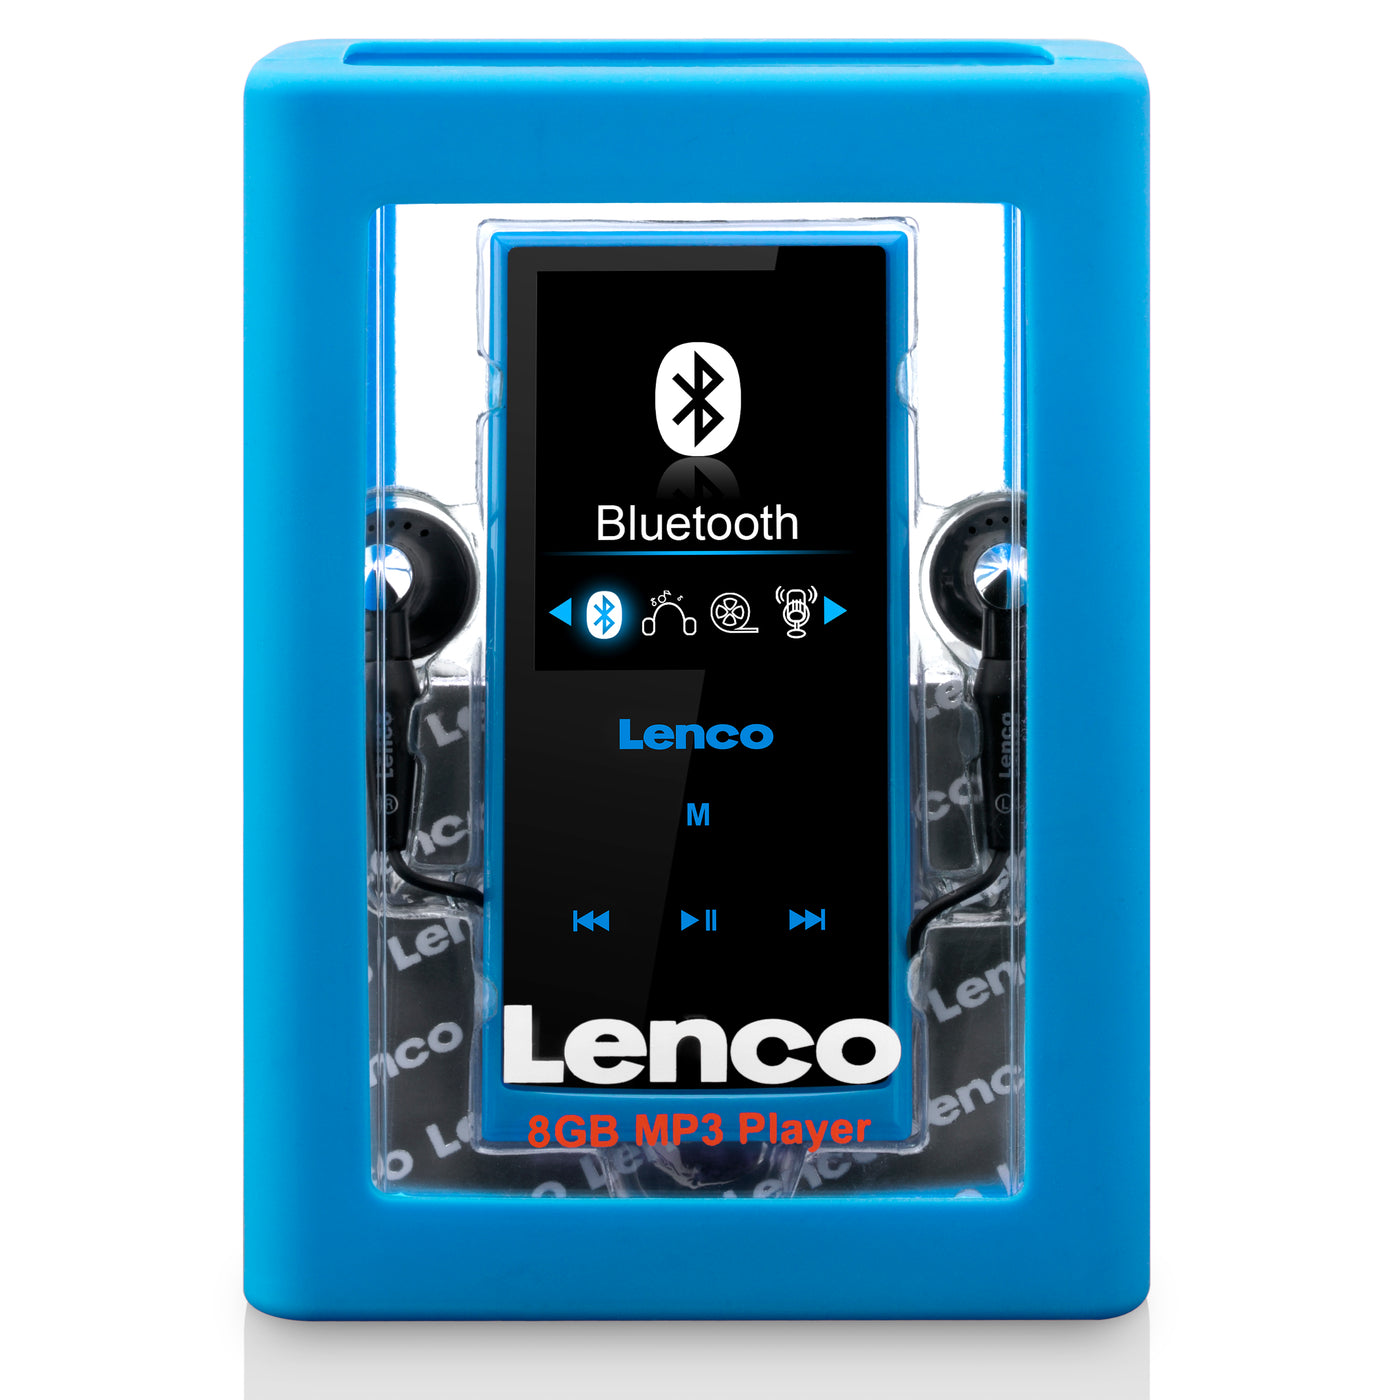 LENCO Xemio-760 BT Niebieski - Odtwarzacz MP3/MP4 z pamięcią Bluetooth® 8GB - Niebieski